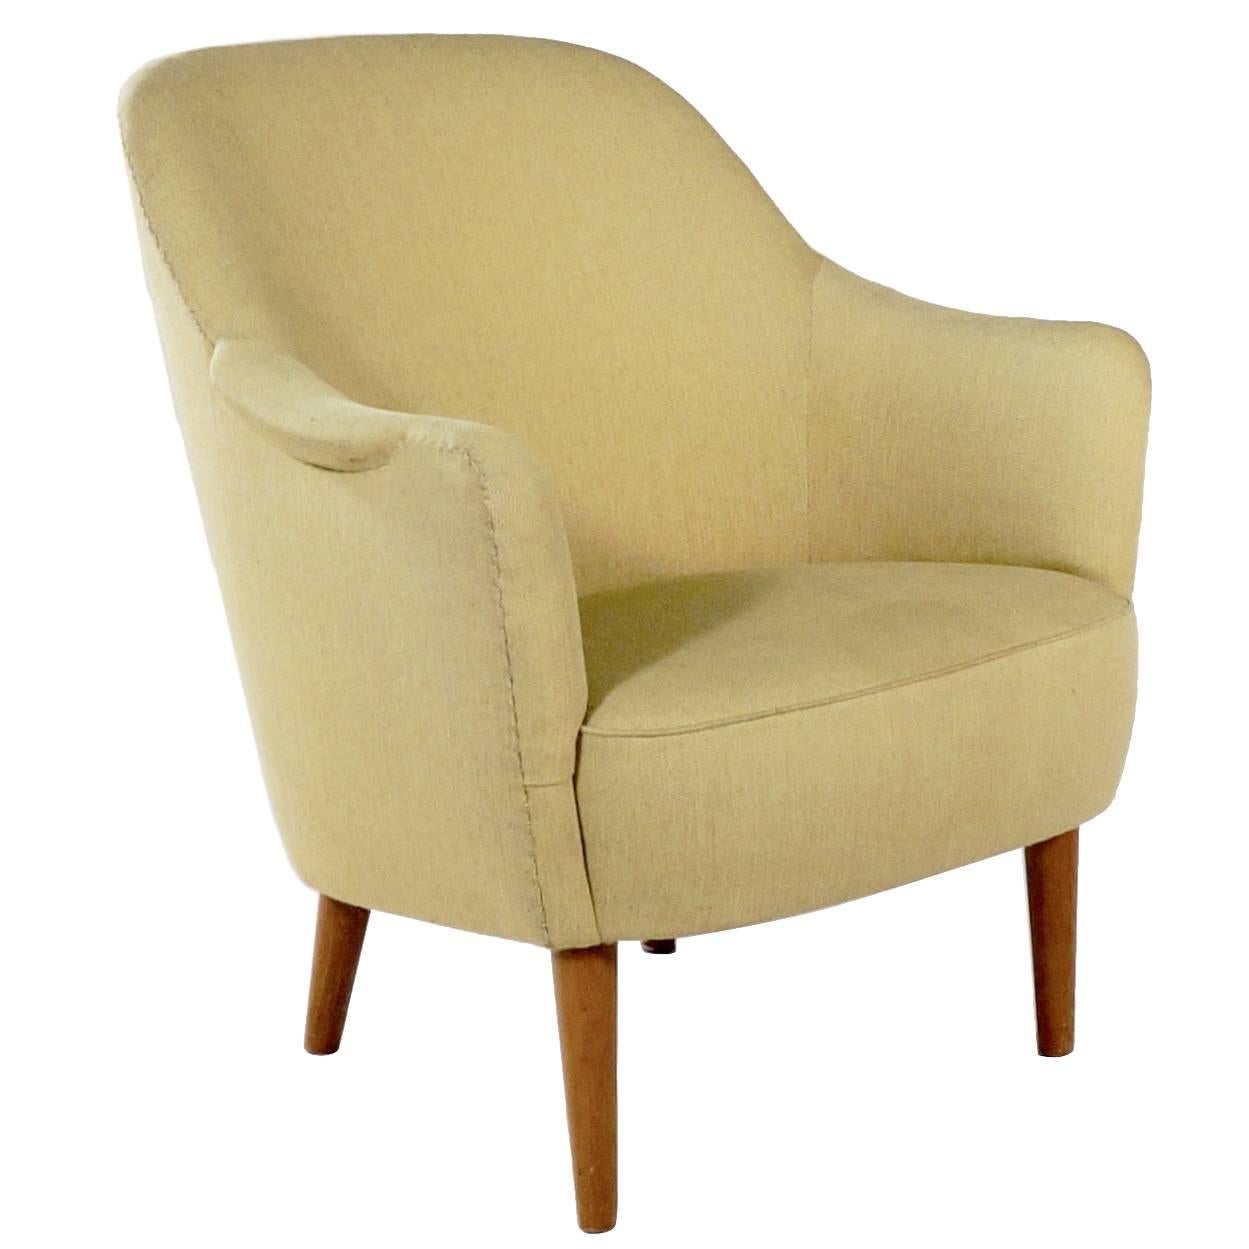 Upholstered 'Sampsel' Chair by Carl Malmsten